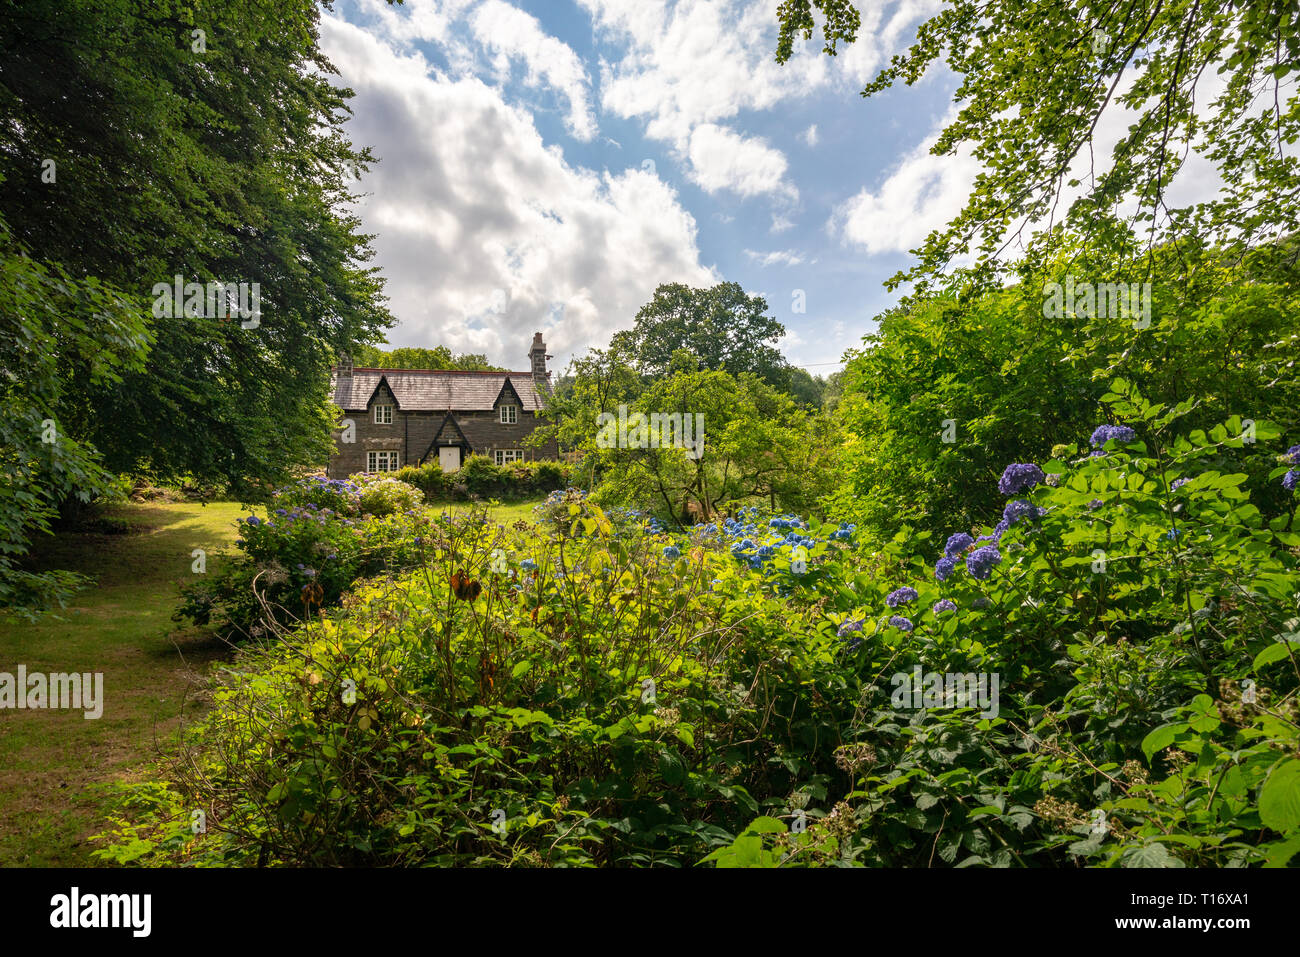 A small stone cottage hidding in the lush vegetation found near Llyn Gwynant, Wales, United Kingdom Stock Photo